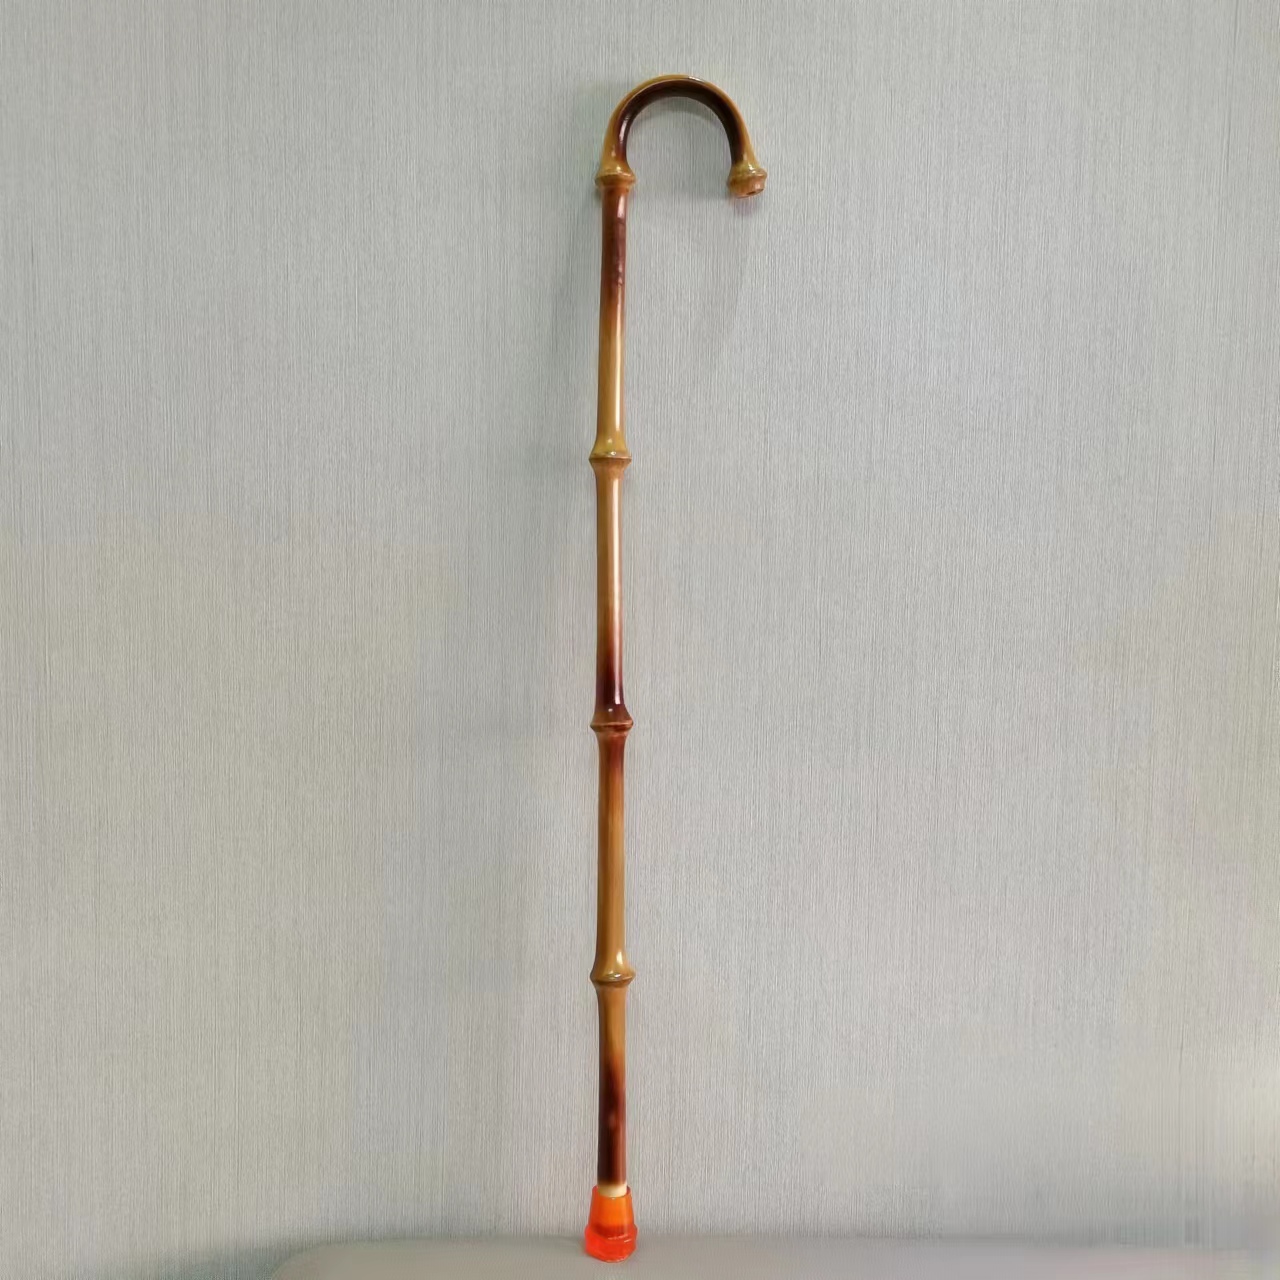 传统筇竹拐子杖实用老年手杖防摔防滑手工竹制登山杖老人轻便礼物